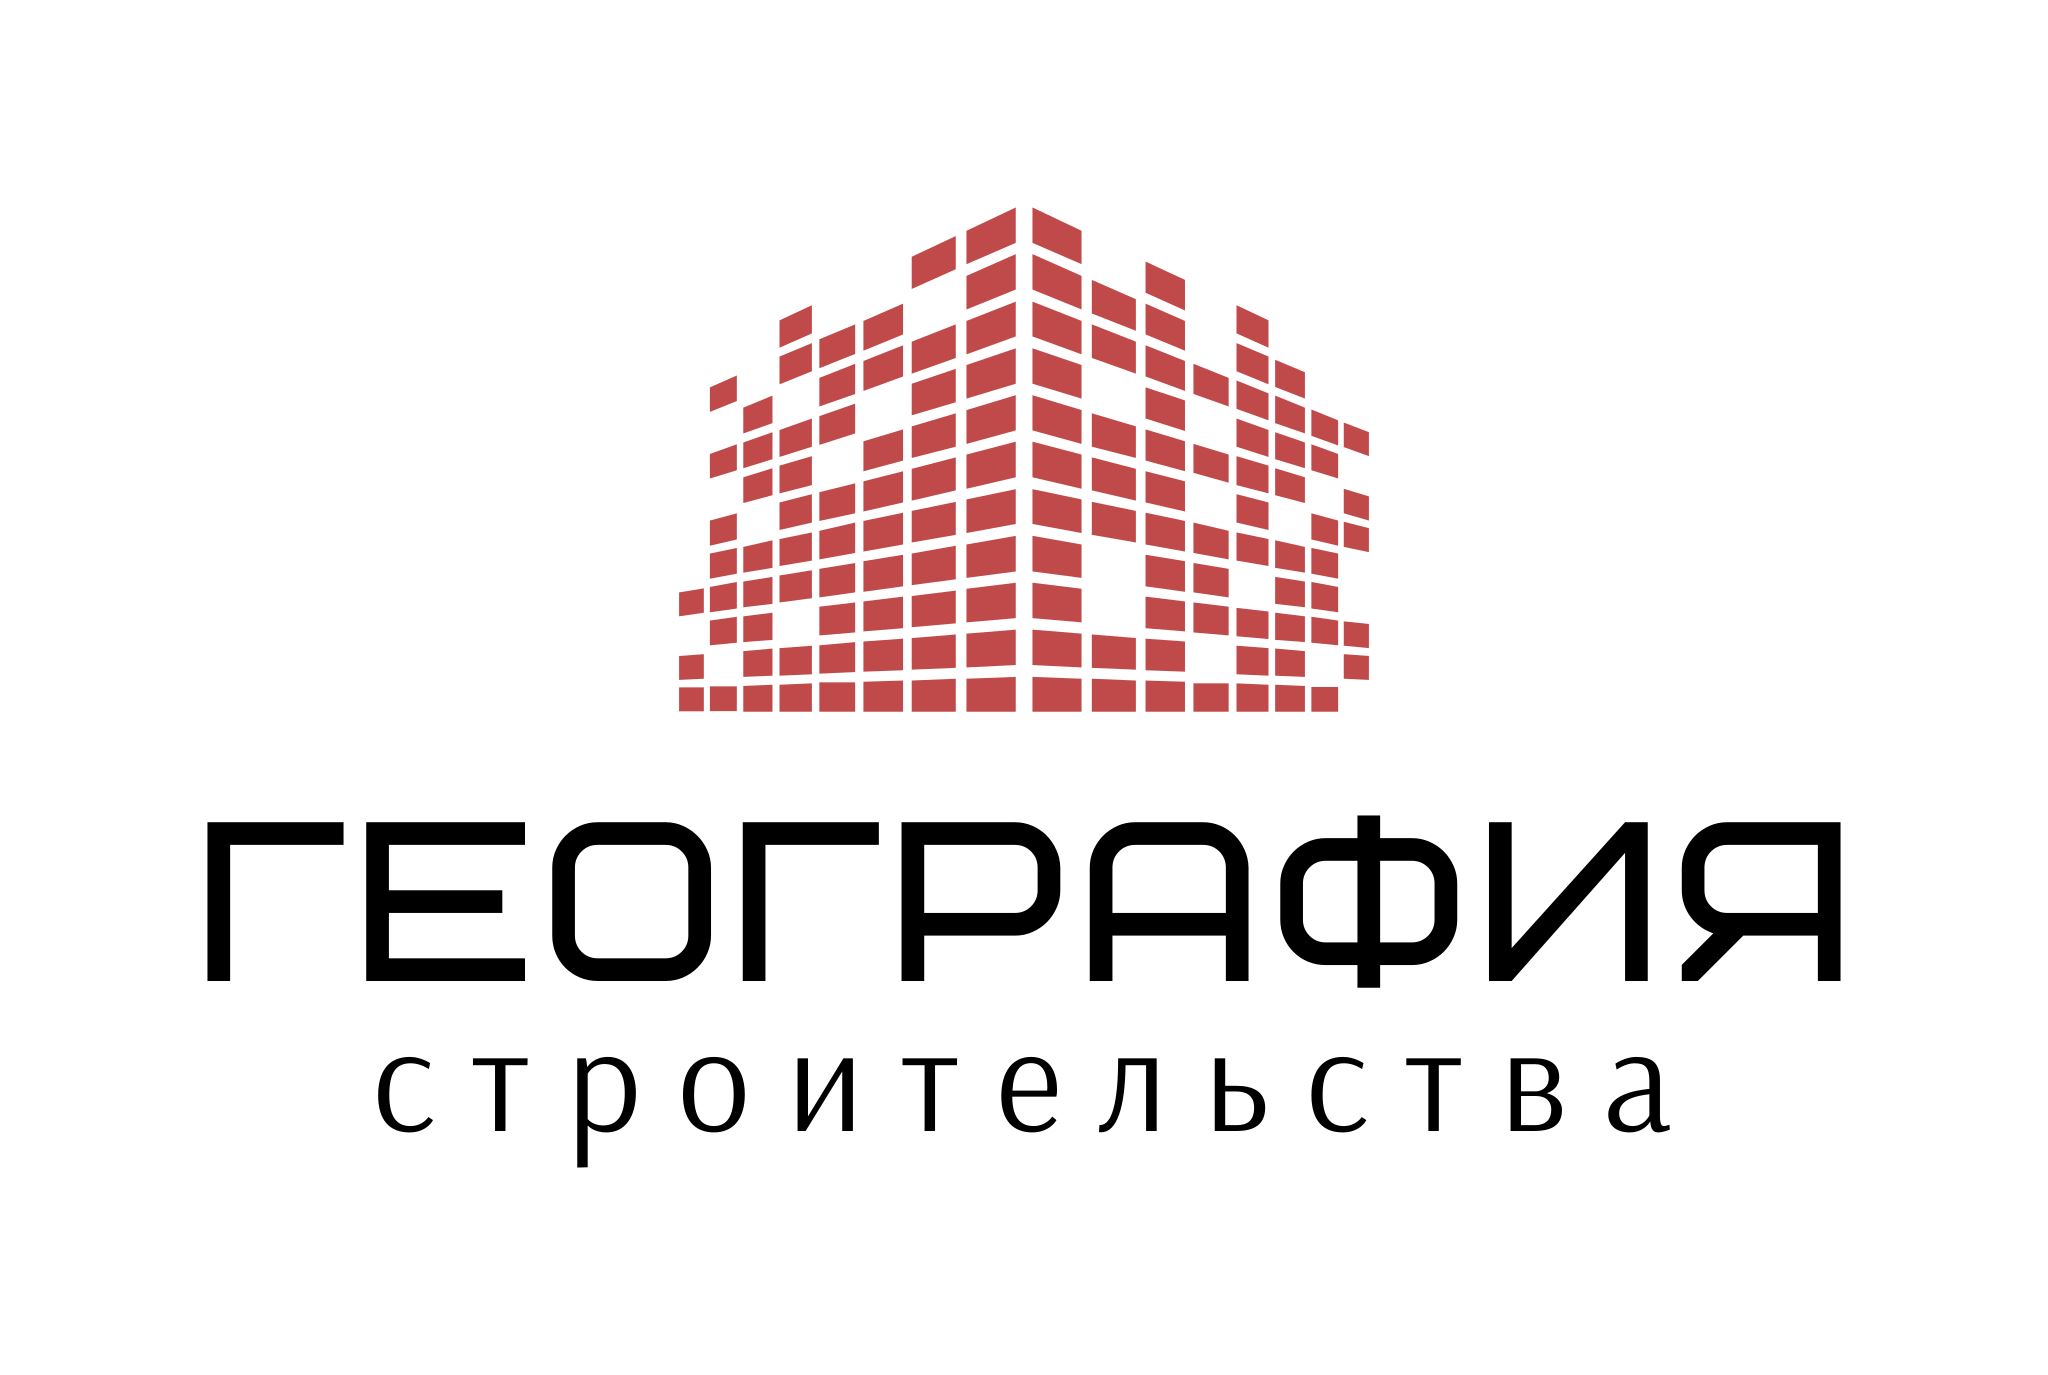 "ГЕОГРАФИЯ СТРОИТЕЛЬСТВА" – логотип